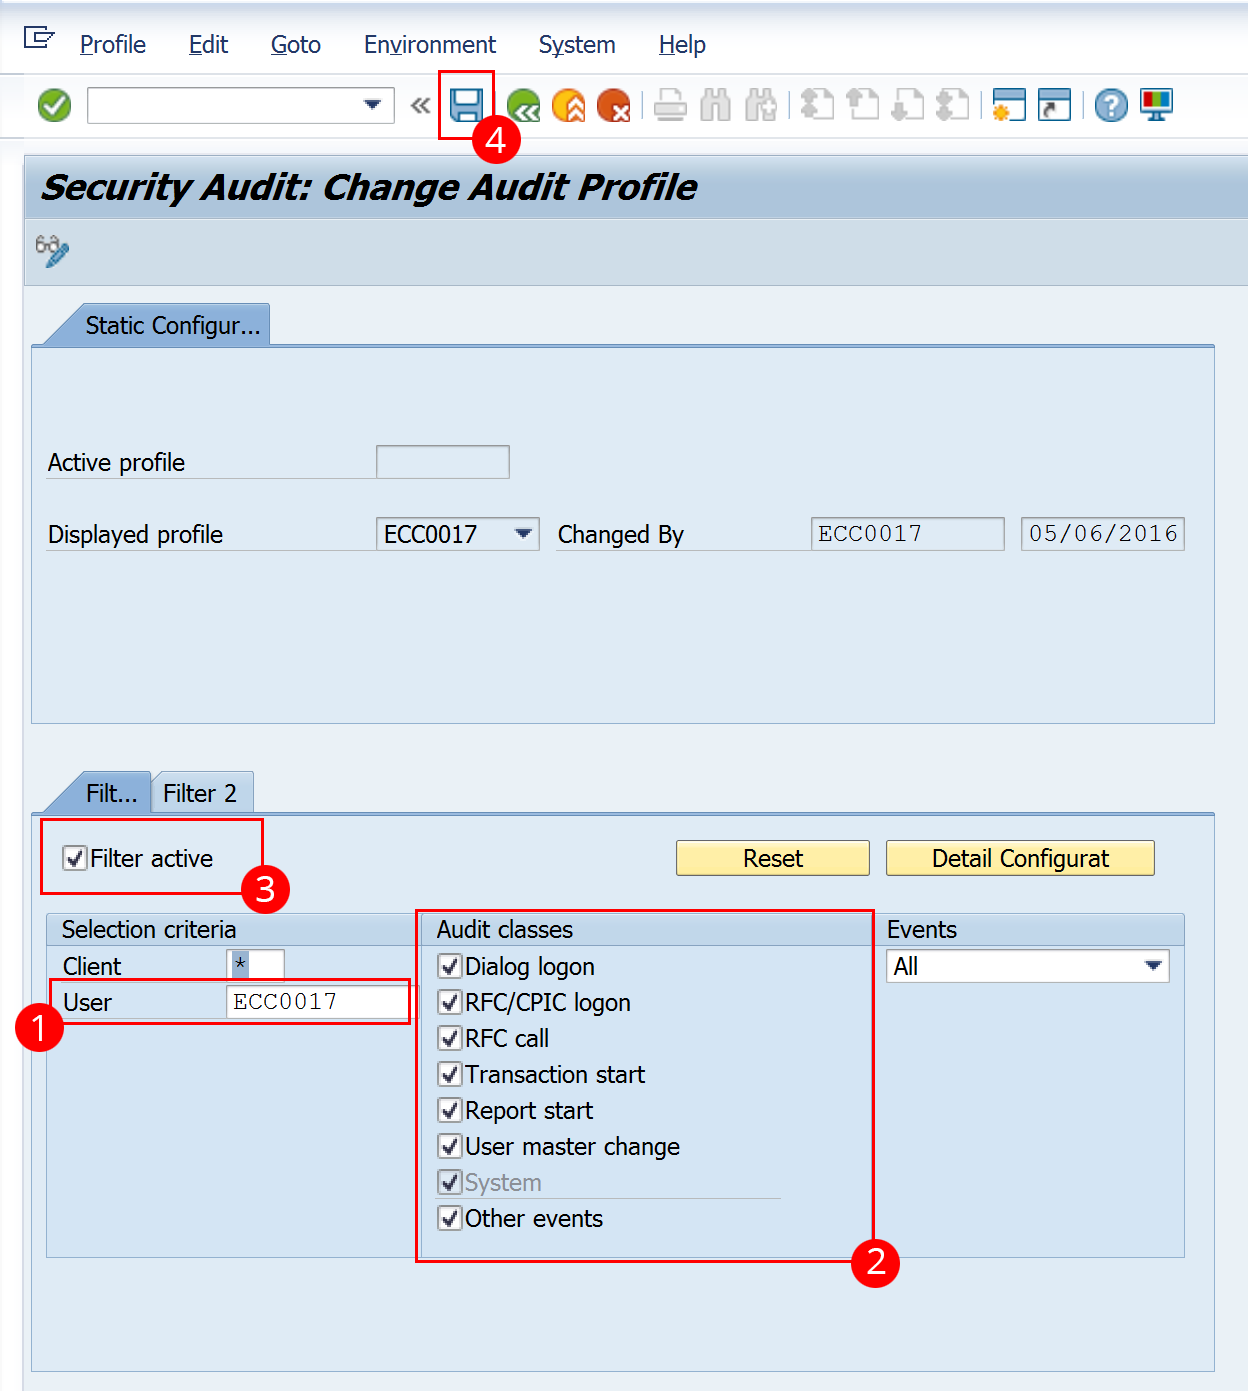 SAP - security audit - change audit profile